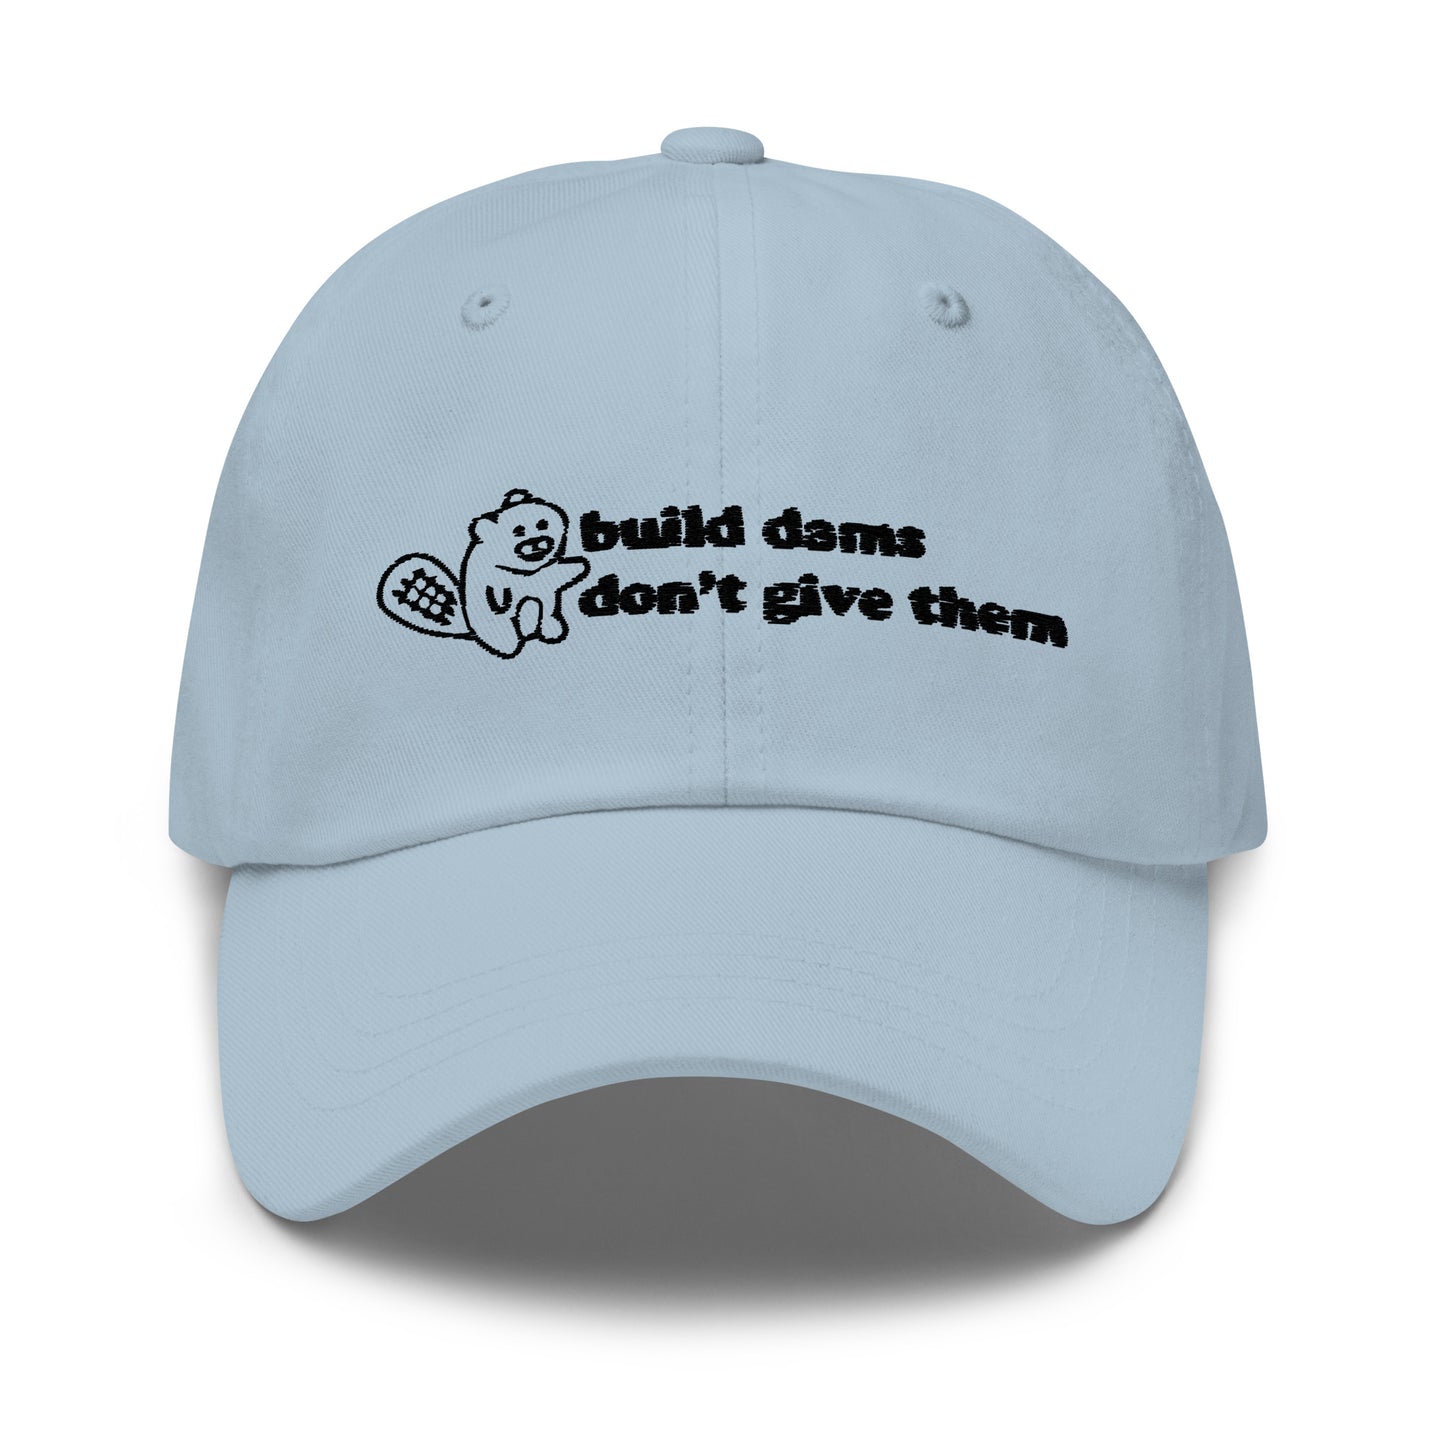 Build Dams hat